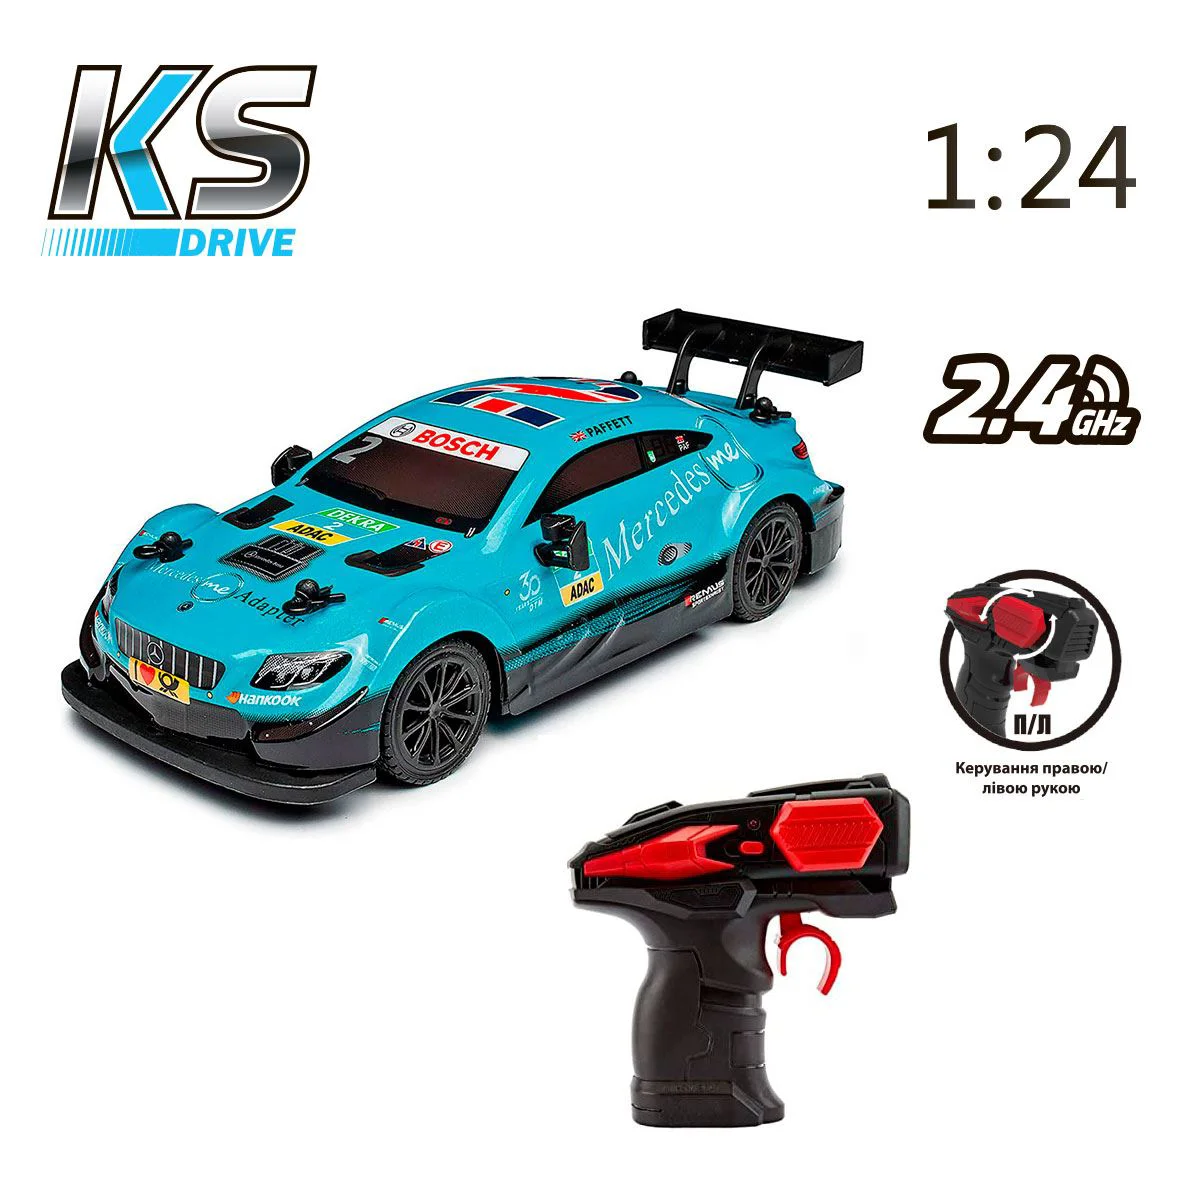 Pадиоуправляемый Автомобиль KS Drive - Mercedes AMG C63 DTM (1:24, 2.4Ghz, голубой)